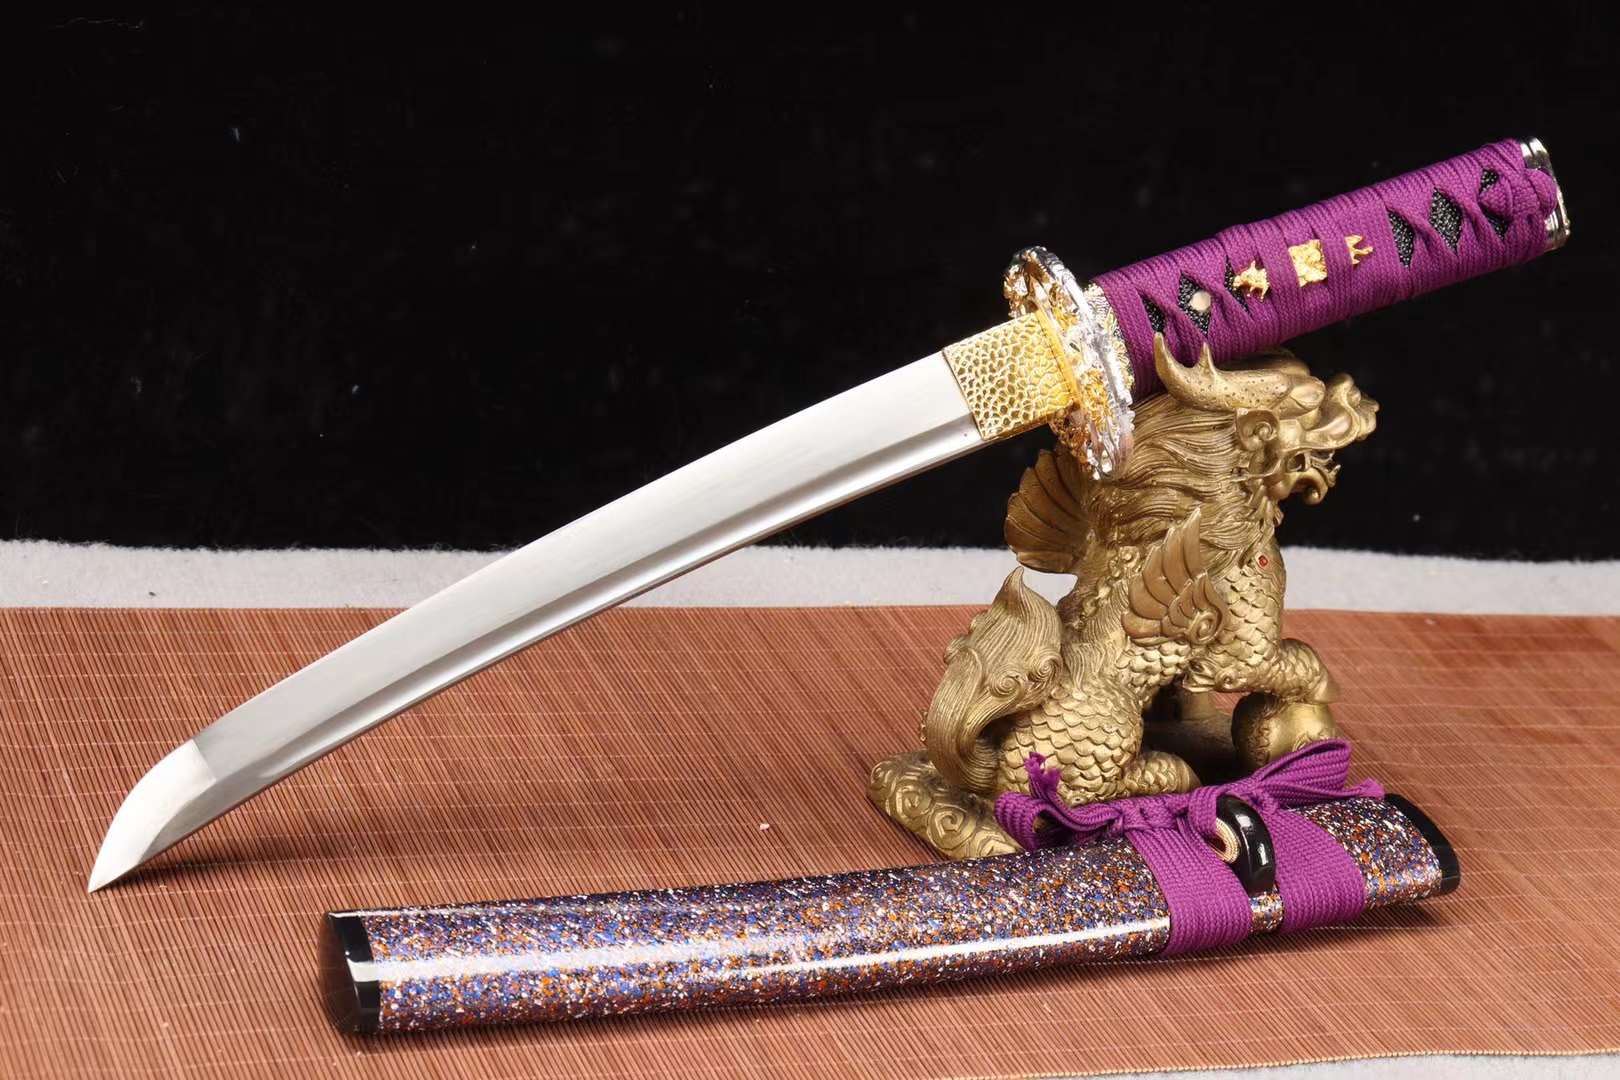 handmade samurai sword,1090 steel sword set,sword steel katana sword,samurai sword purple loveyitadj